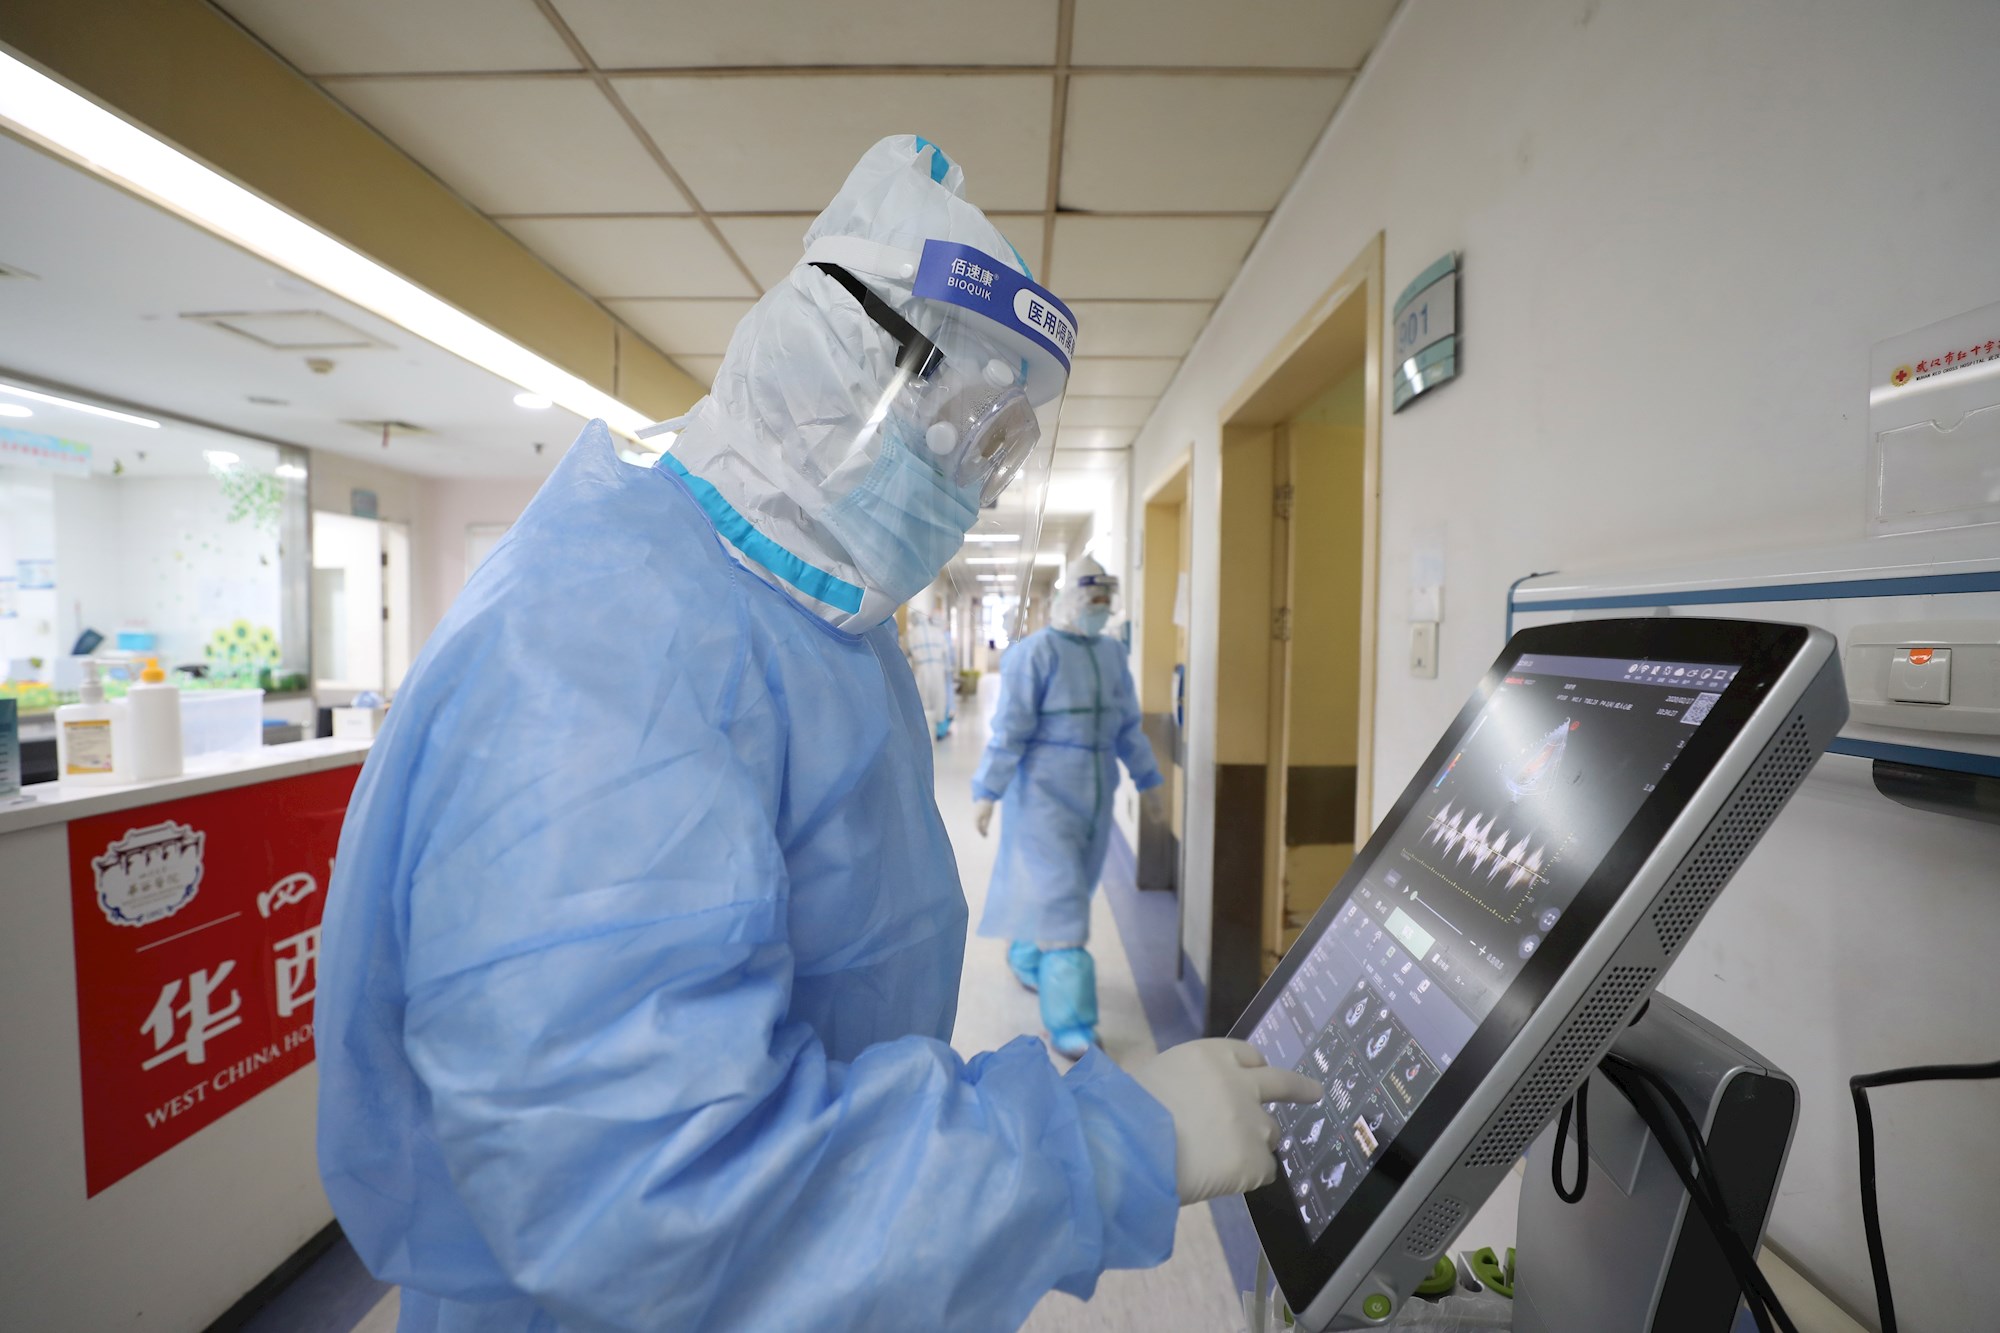 “Parece que los pulmones se apagaran de repente”: El testimonio de un enfermero sobre el coronavirus